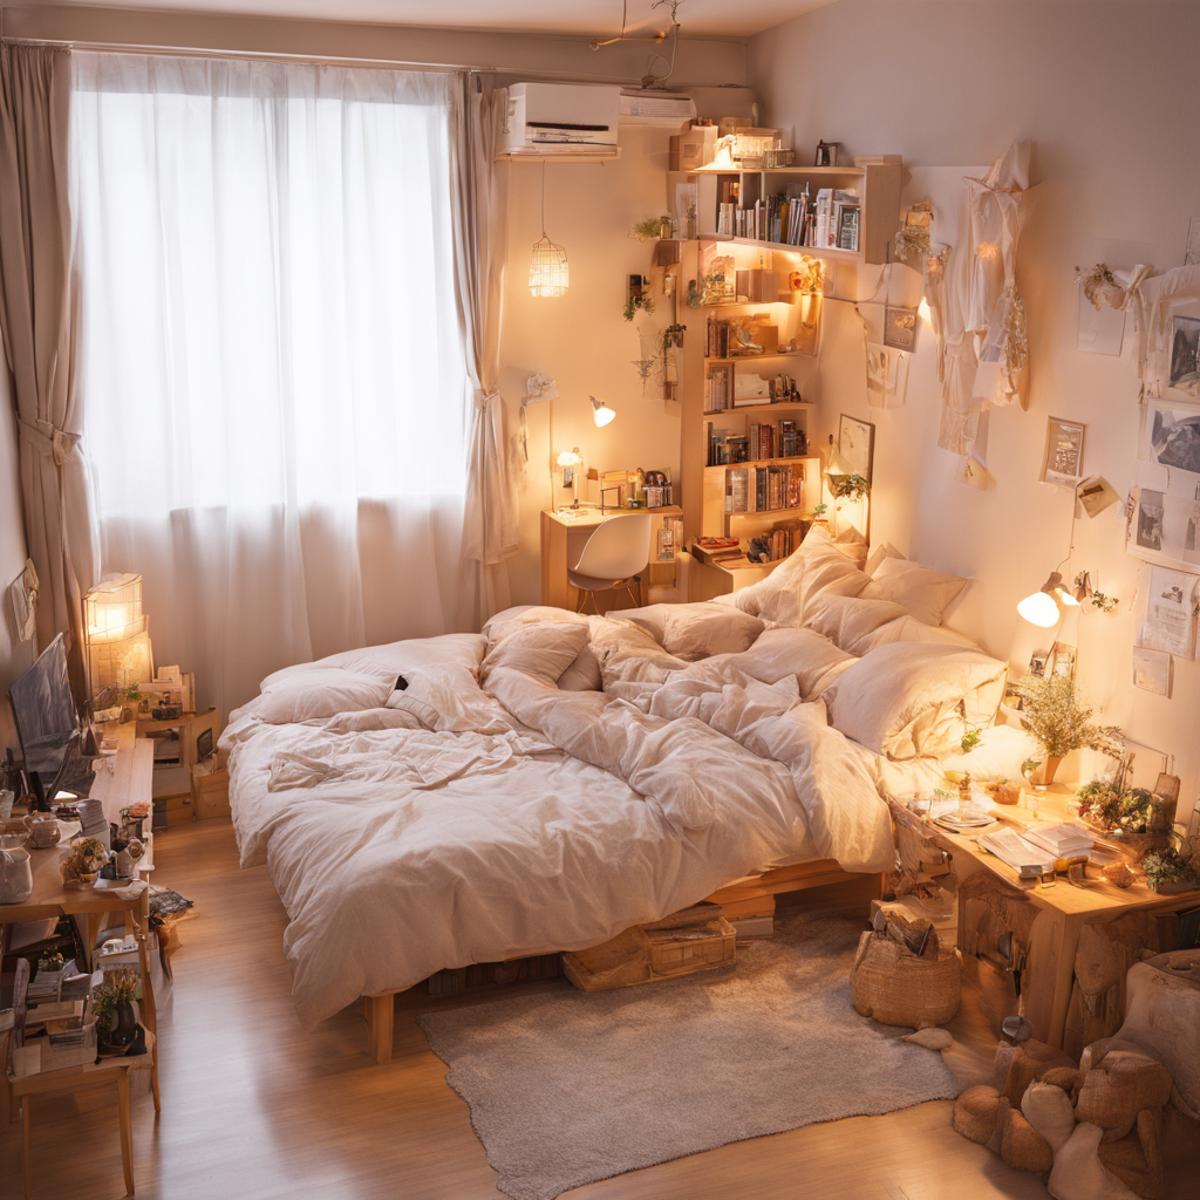 ひとり暮らしの女子の部屋 / Room of a girl living alone SDXL image by swingwings